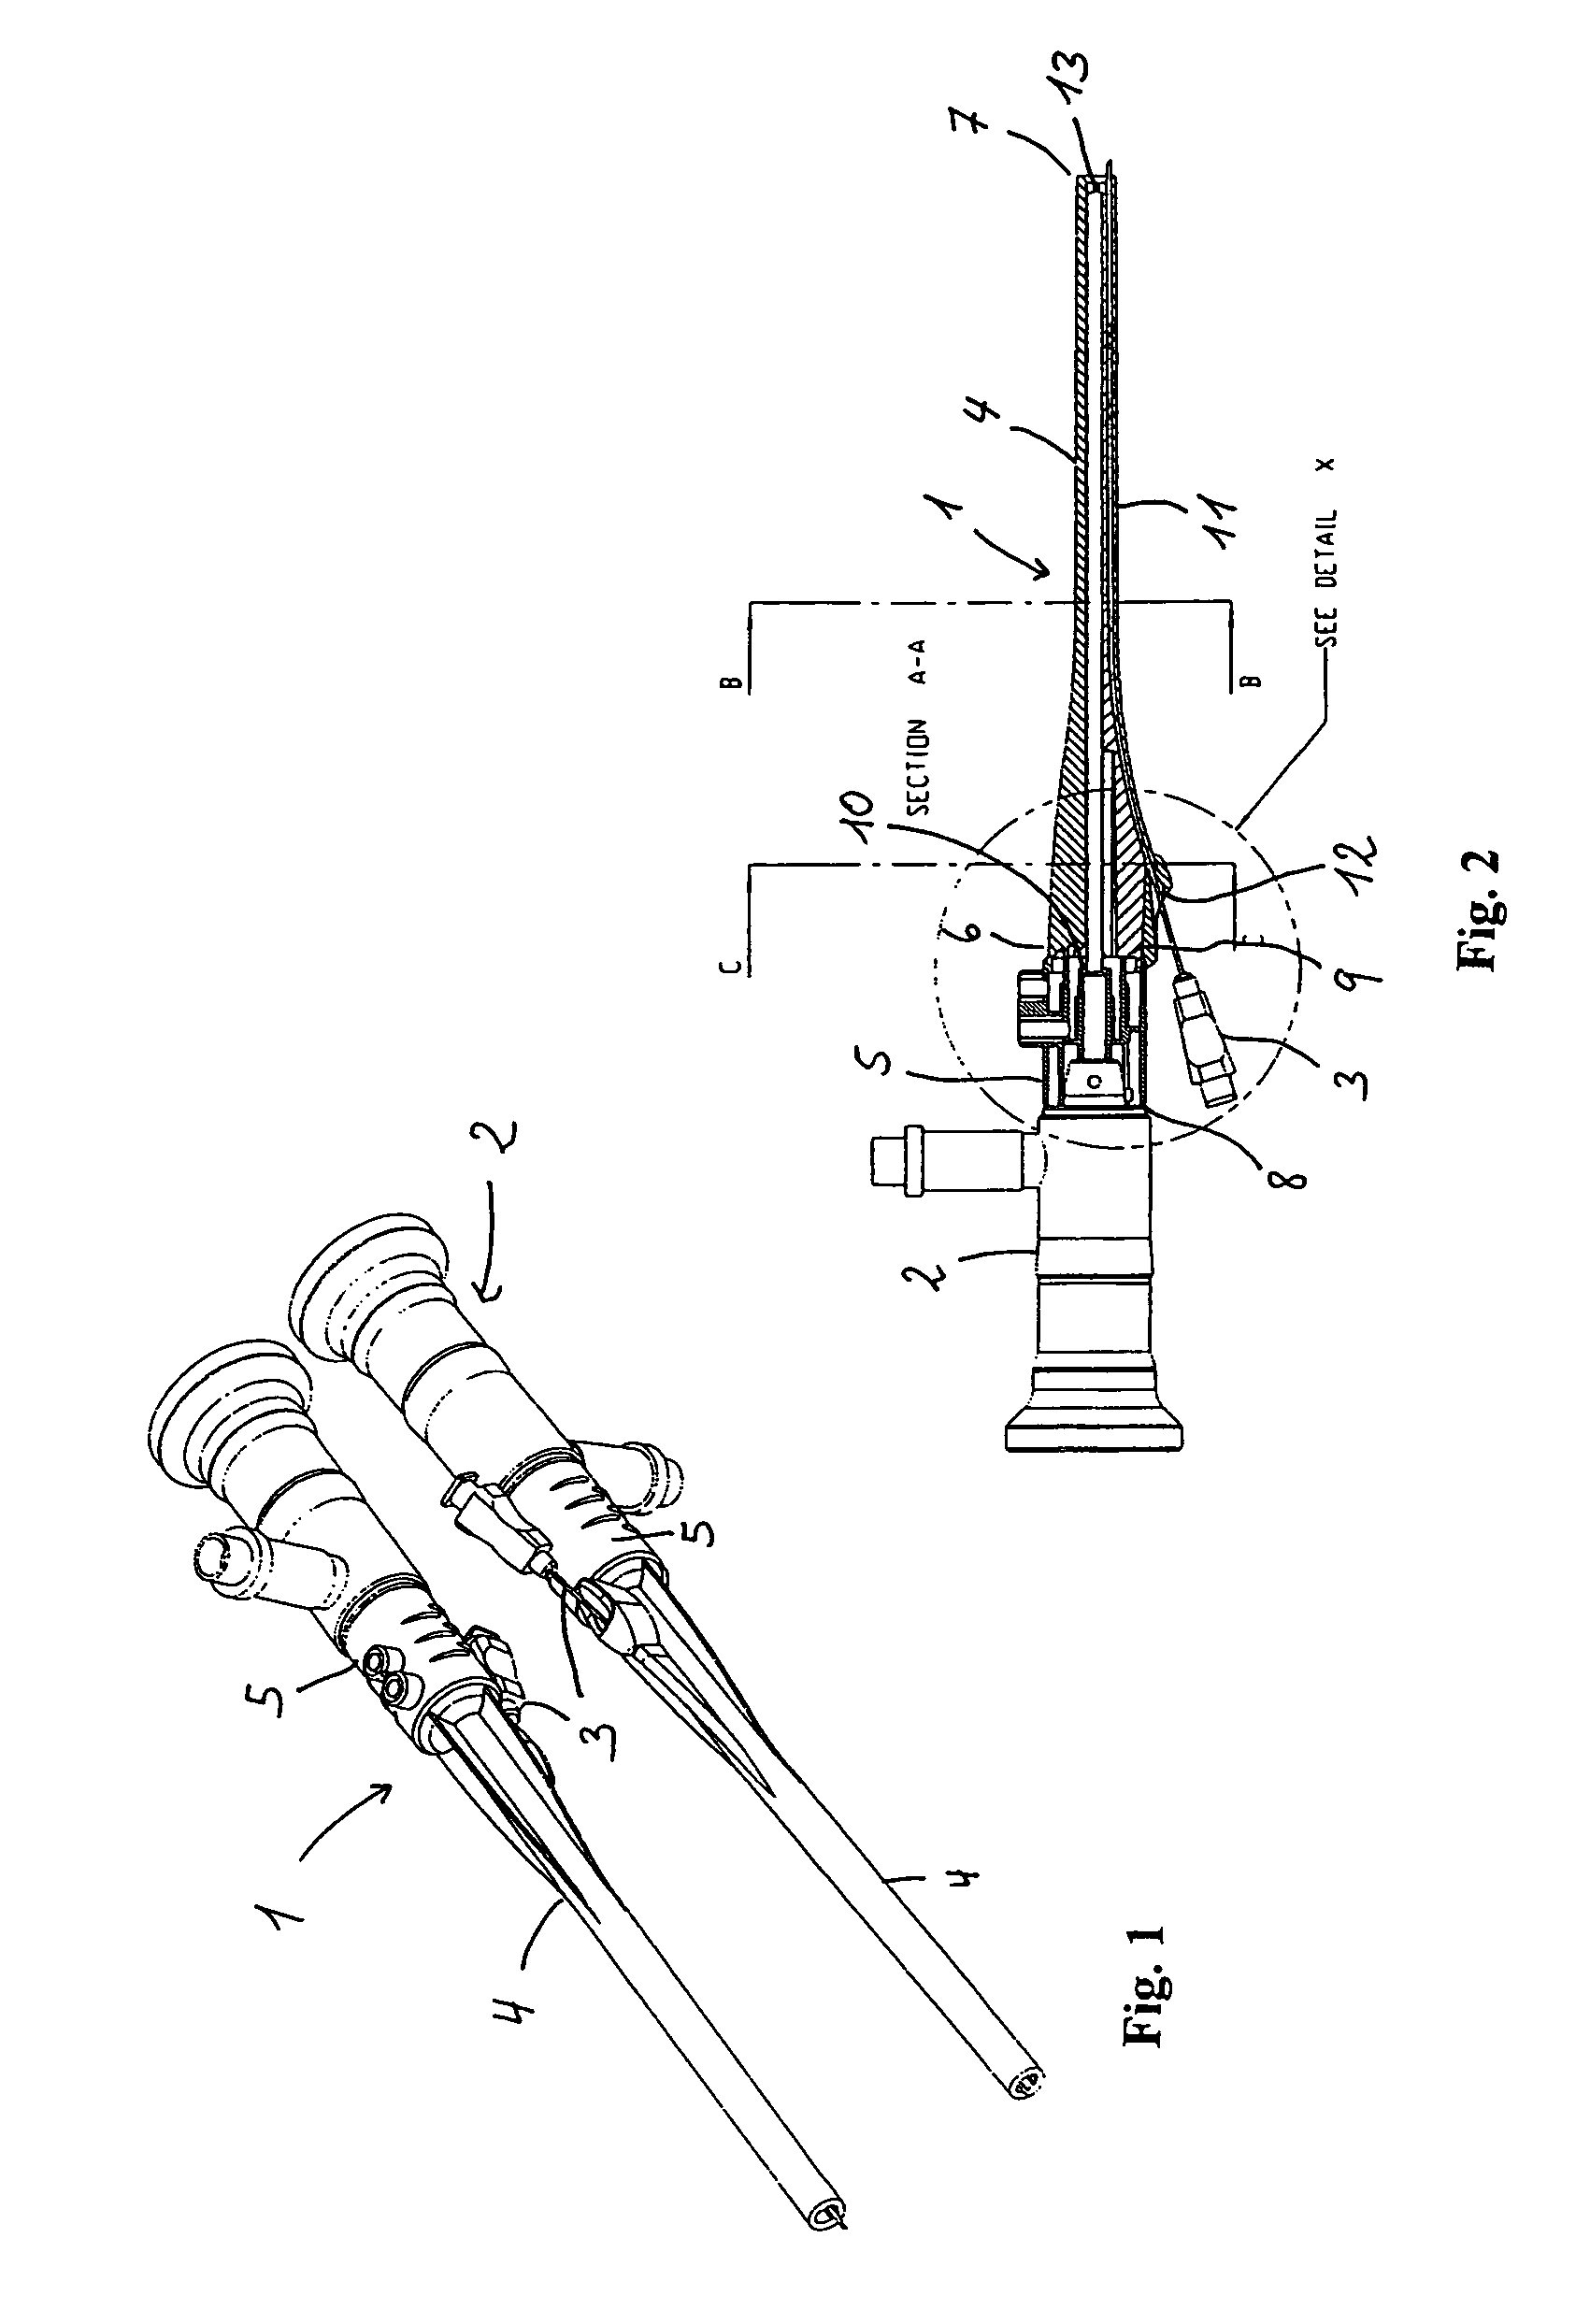 Endoscopic attachment device